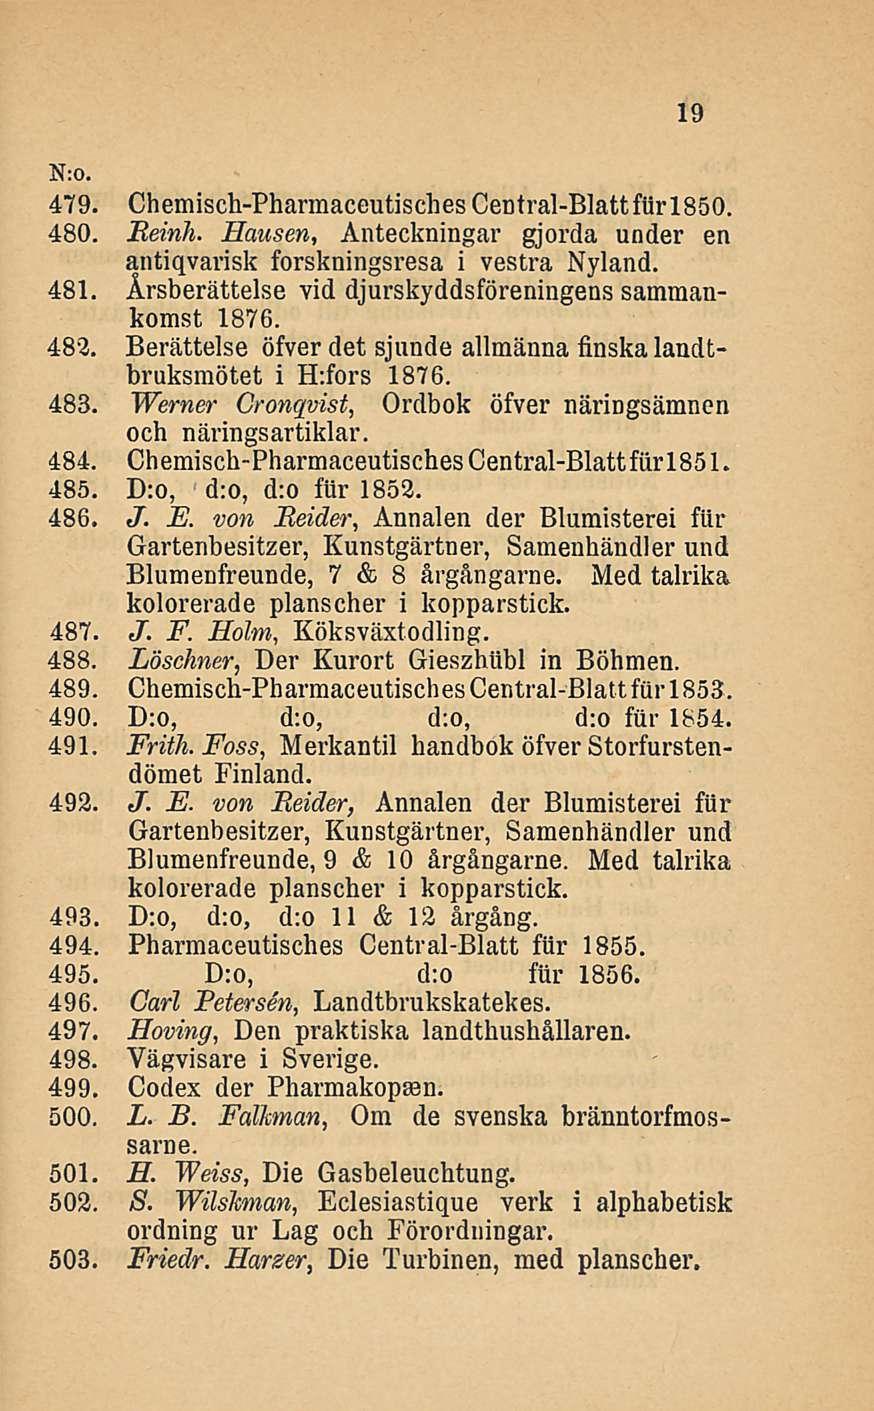 N:0. 479. Chemisch-Phannaceutisches Central-Blattfiir 1850. 480. Reinh. Hansen, Auteckningar gjorda under en antiqvarisk forskningsresa i vestra Nyland. 481.